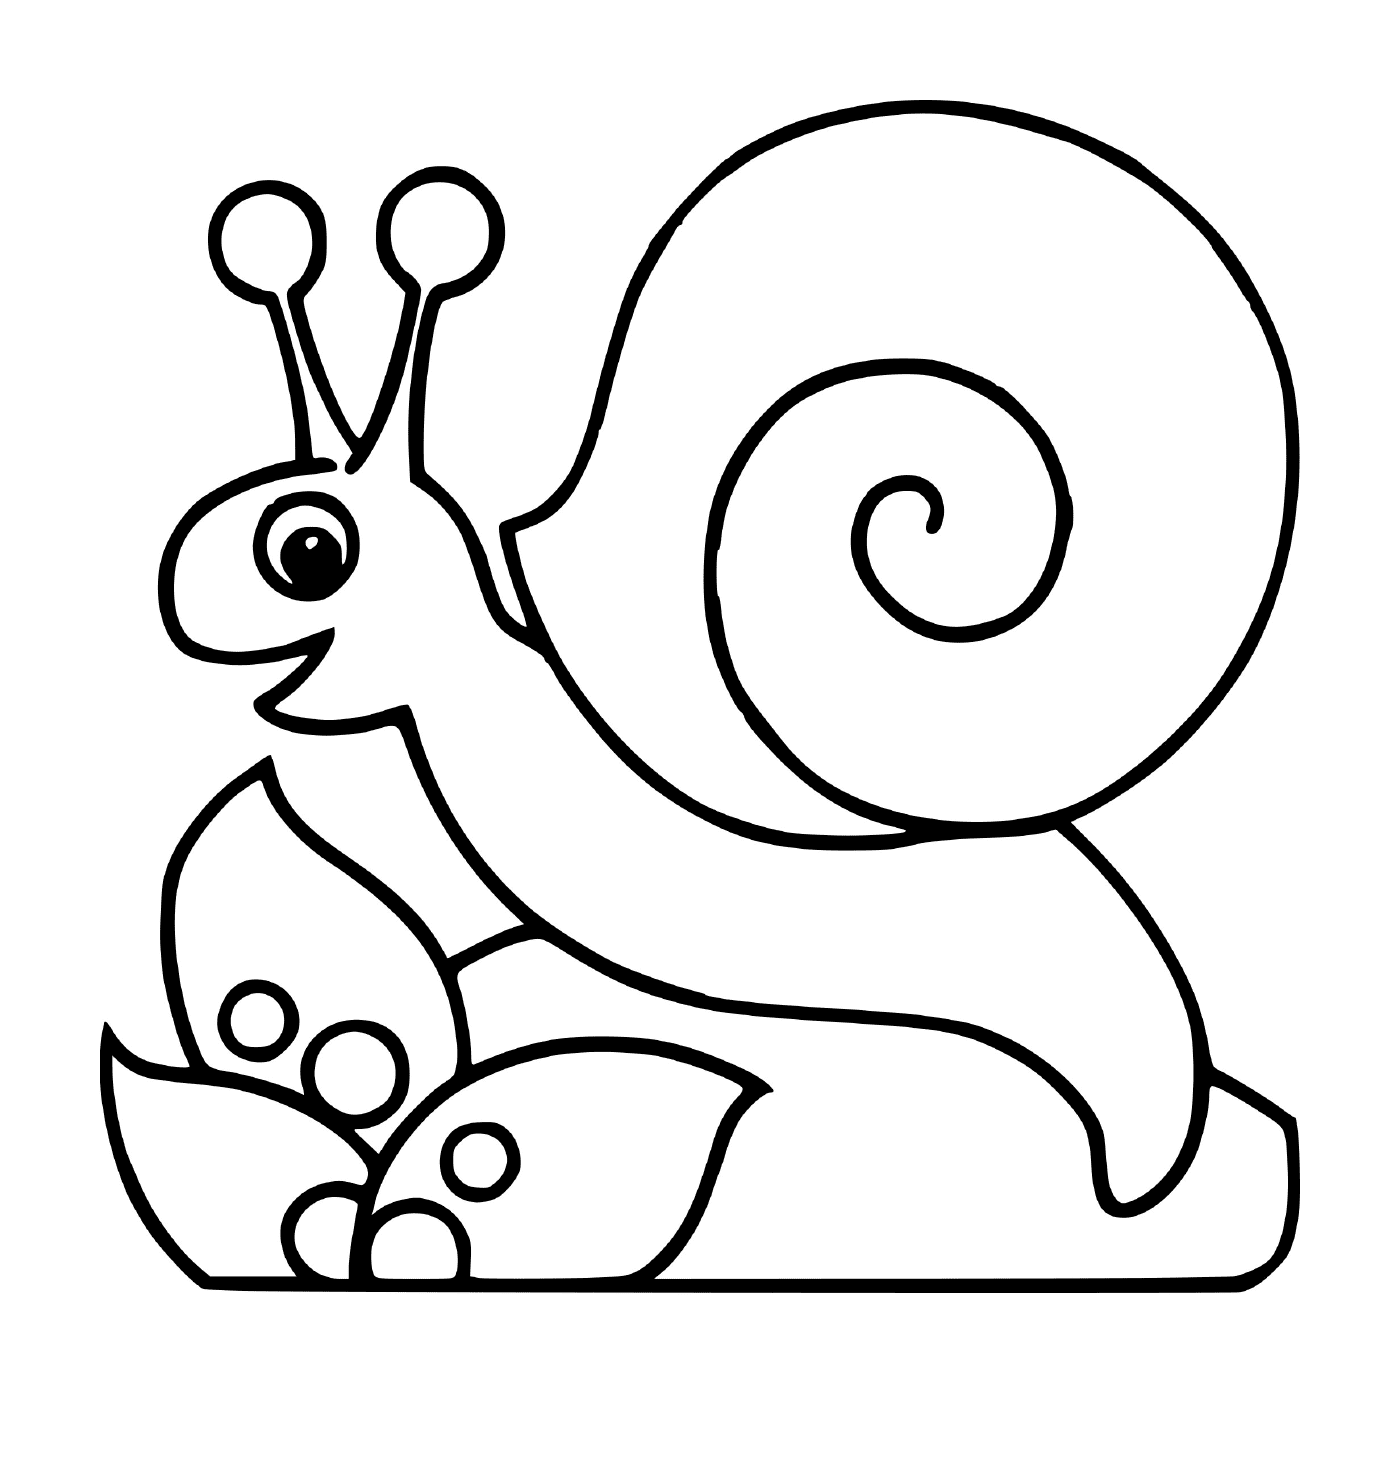  Peaceful snail near a flower 